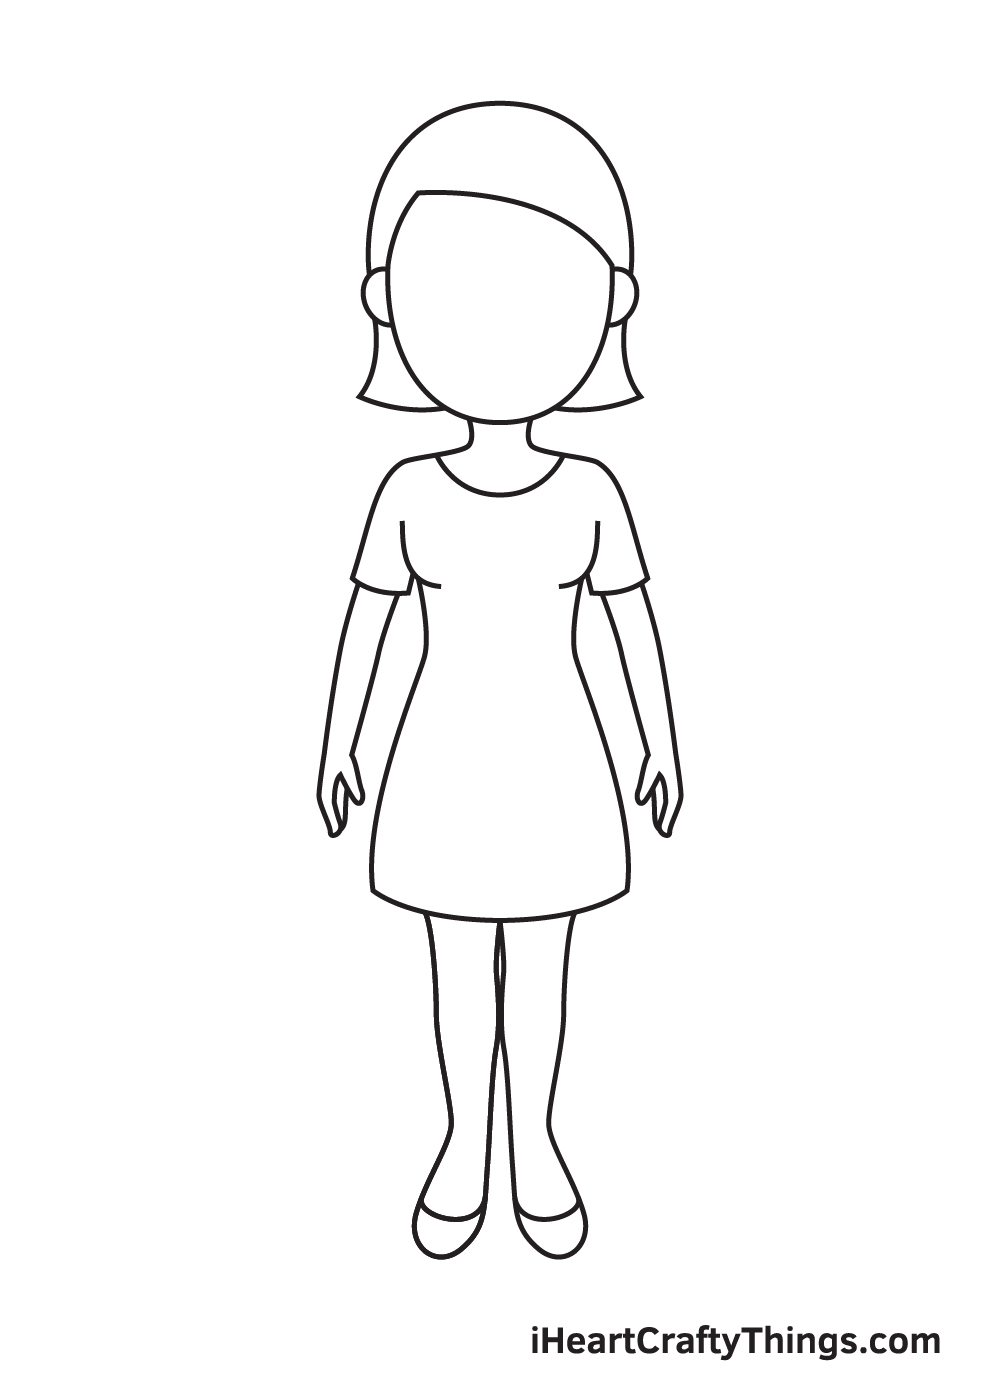 Woman DRAWING – STEP 7 - Hướng dẫn chi tiết cách vẽ cô gái đơn giản với 9 bước cơ bản